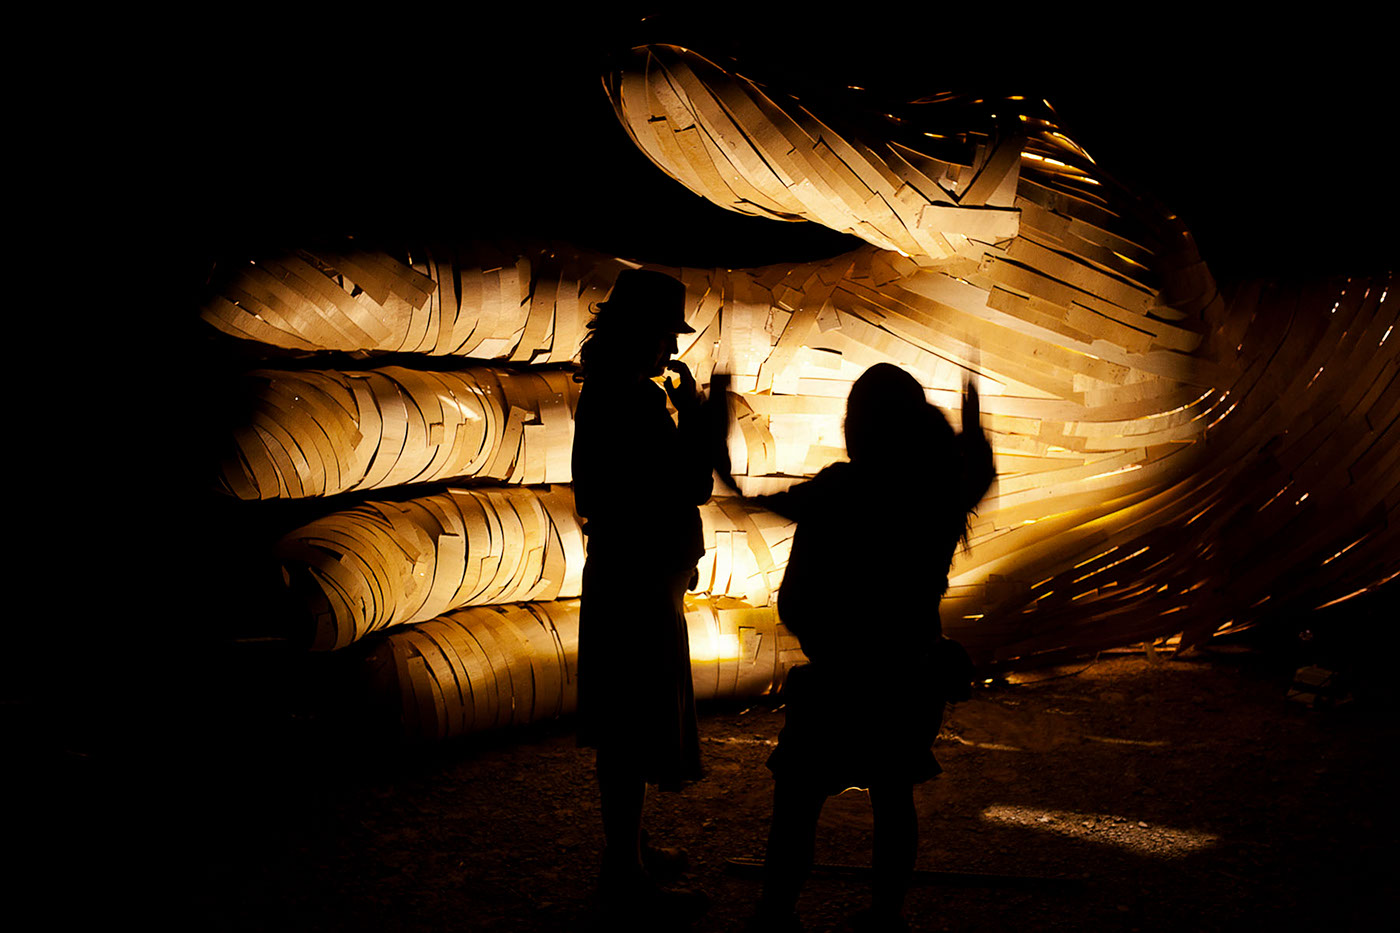 afrika burn Tankwa party Burning Man festival rig setup DPW radical self expression